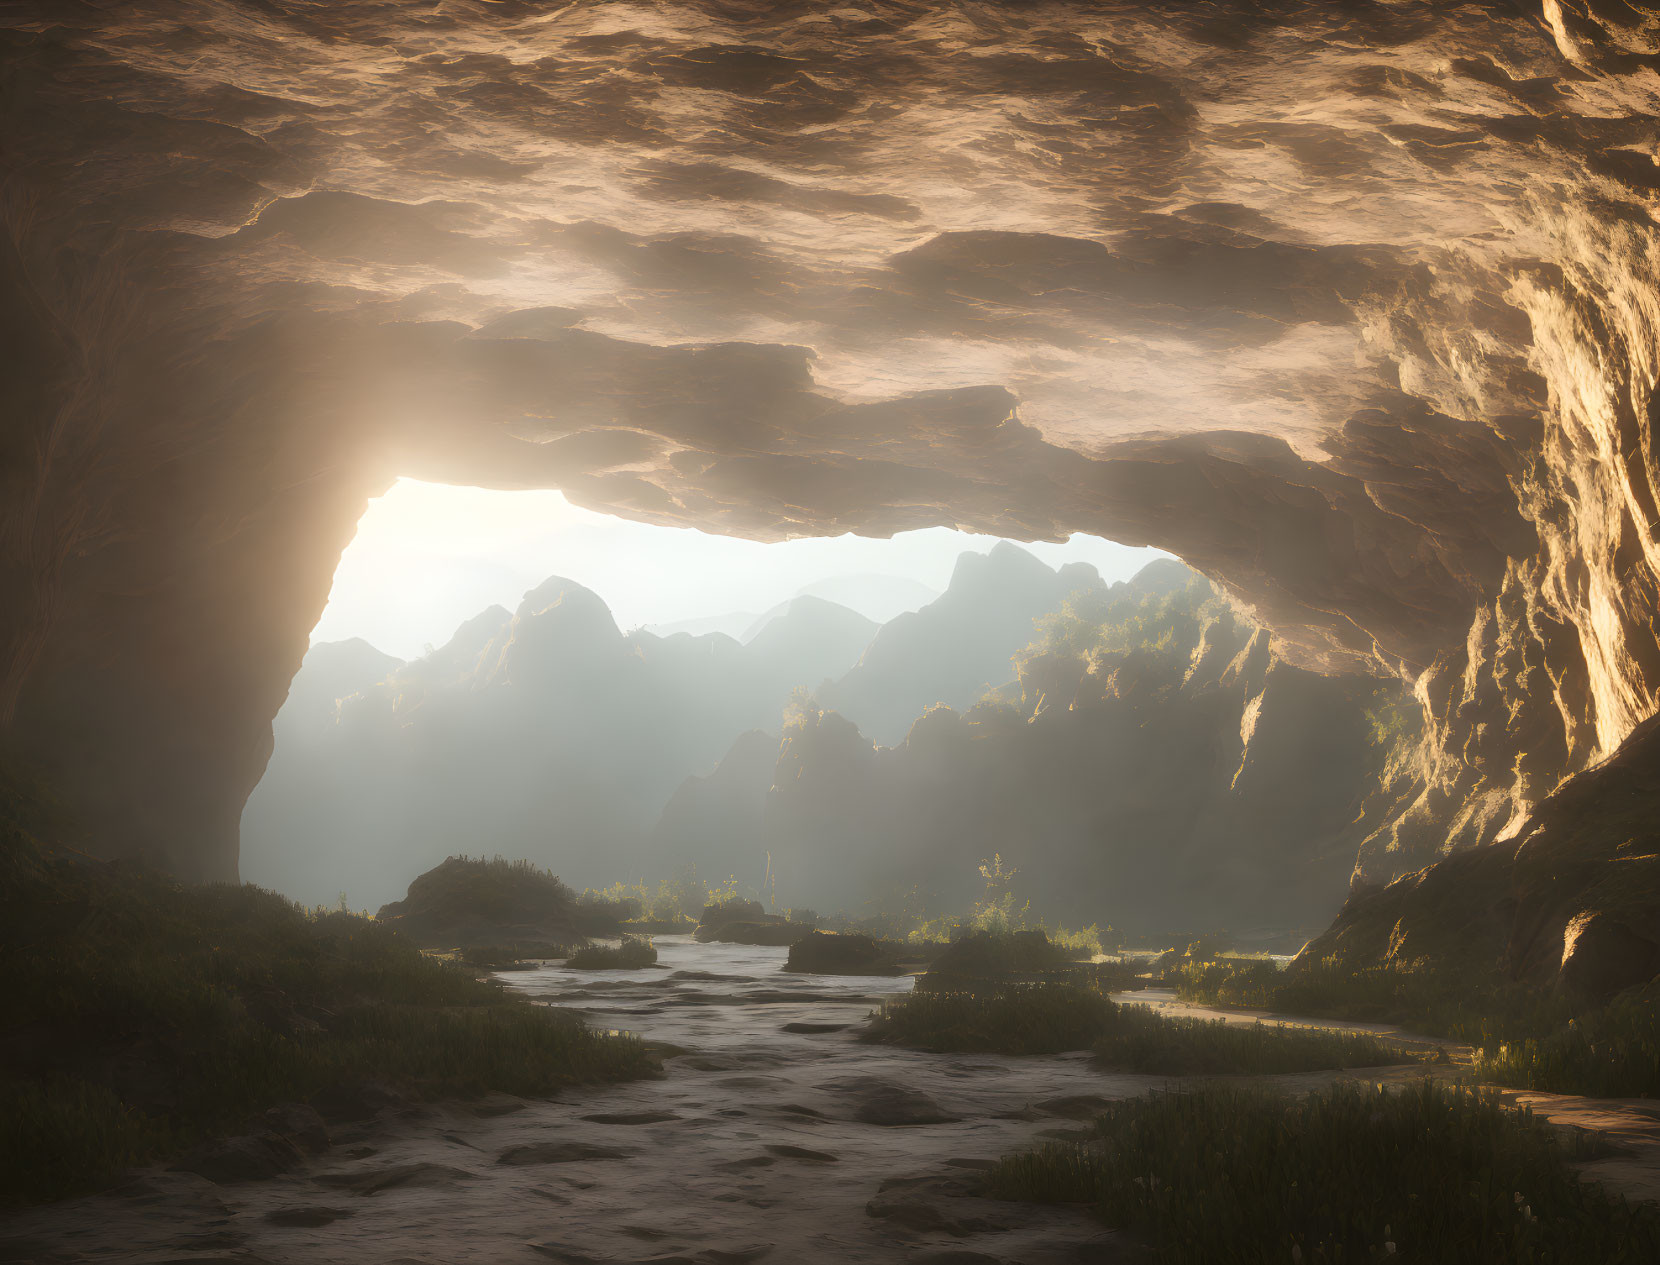 Cave of wonders